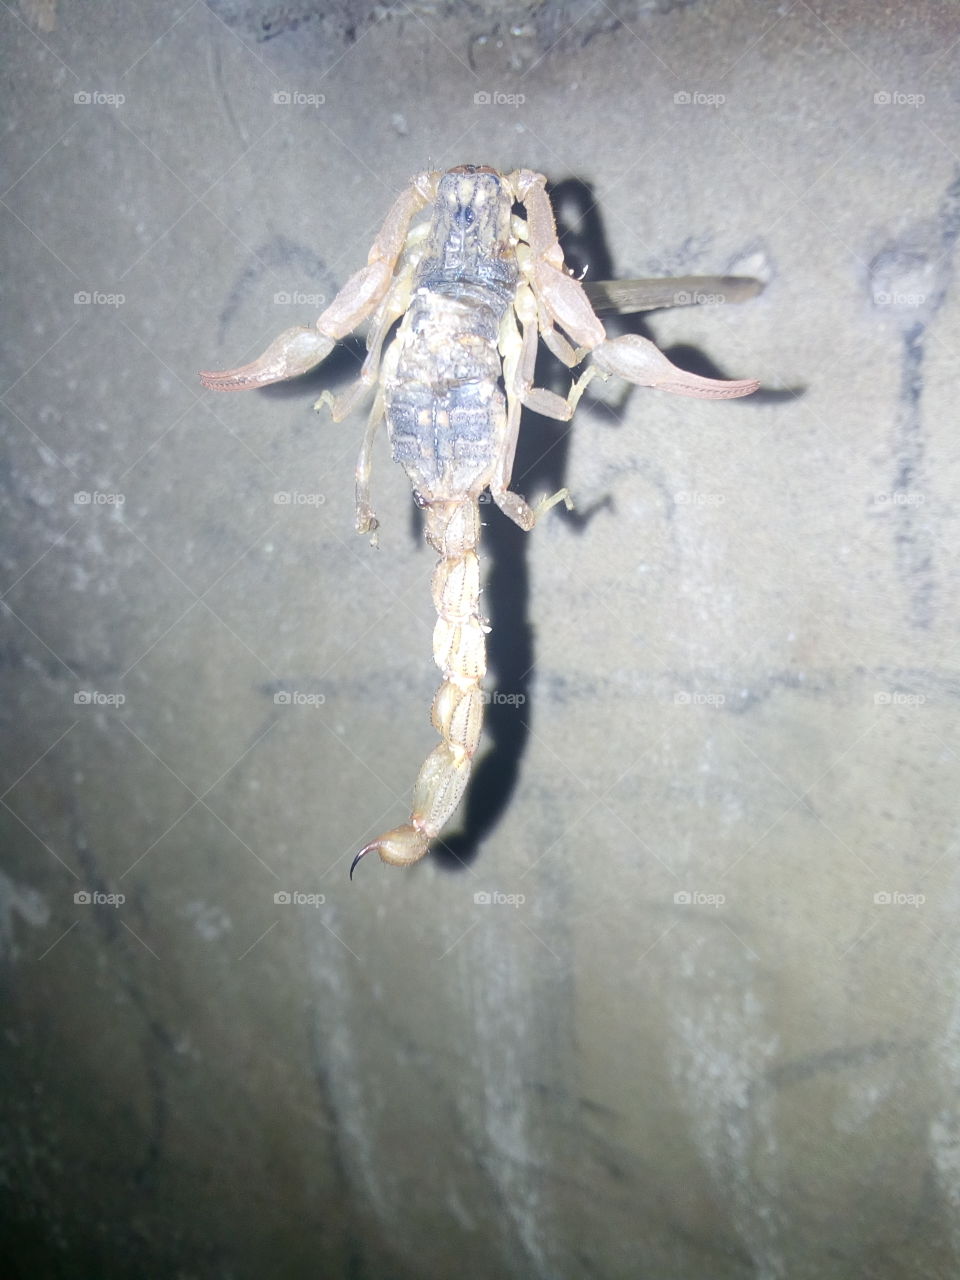 poisonous scorpion